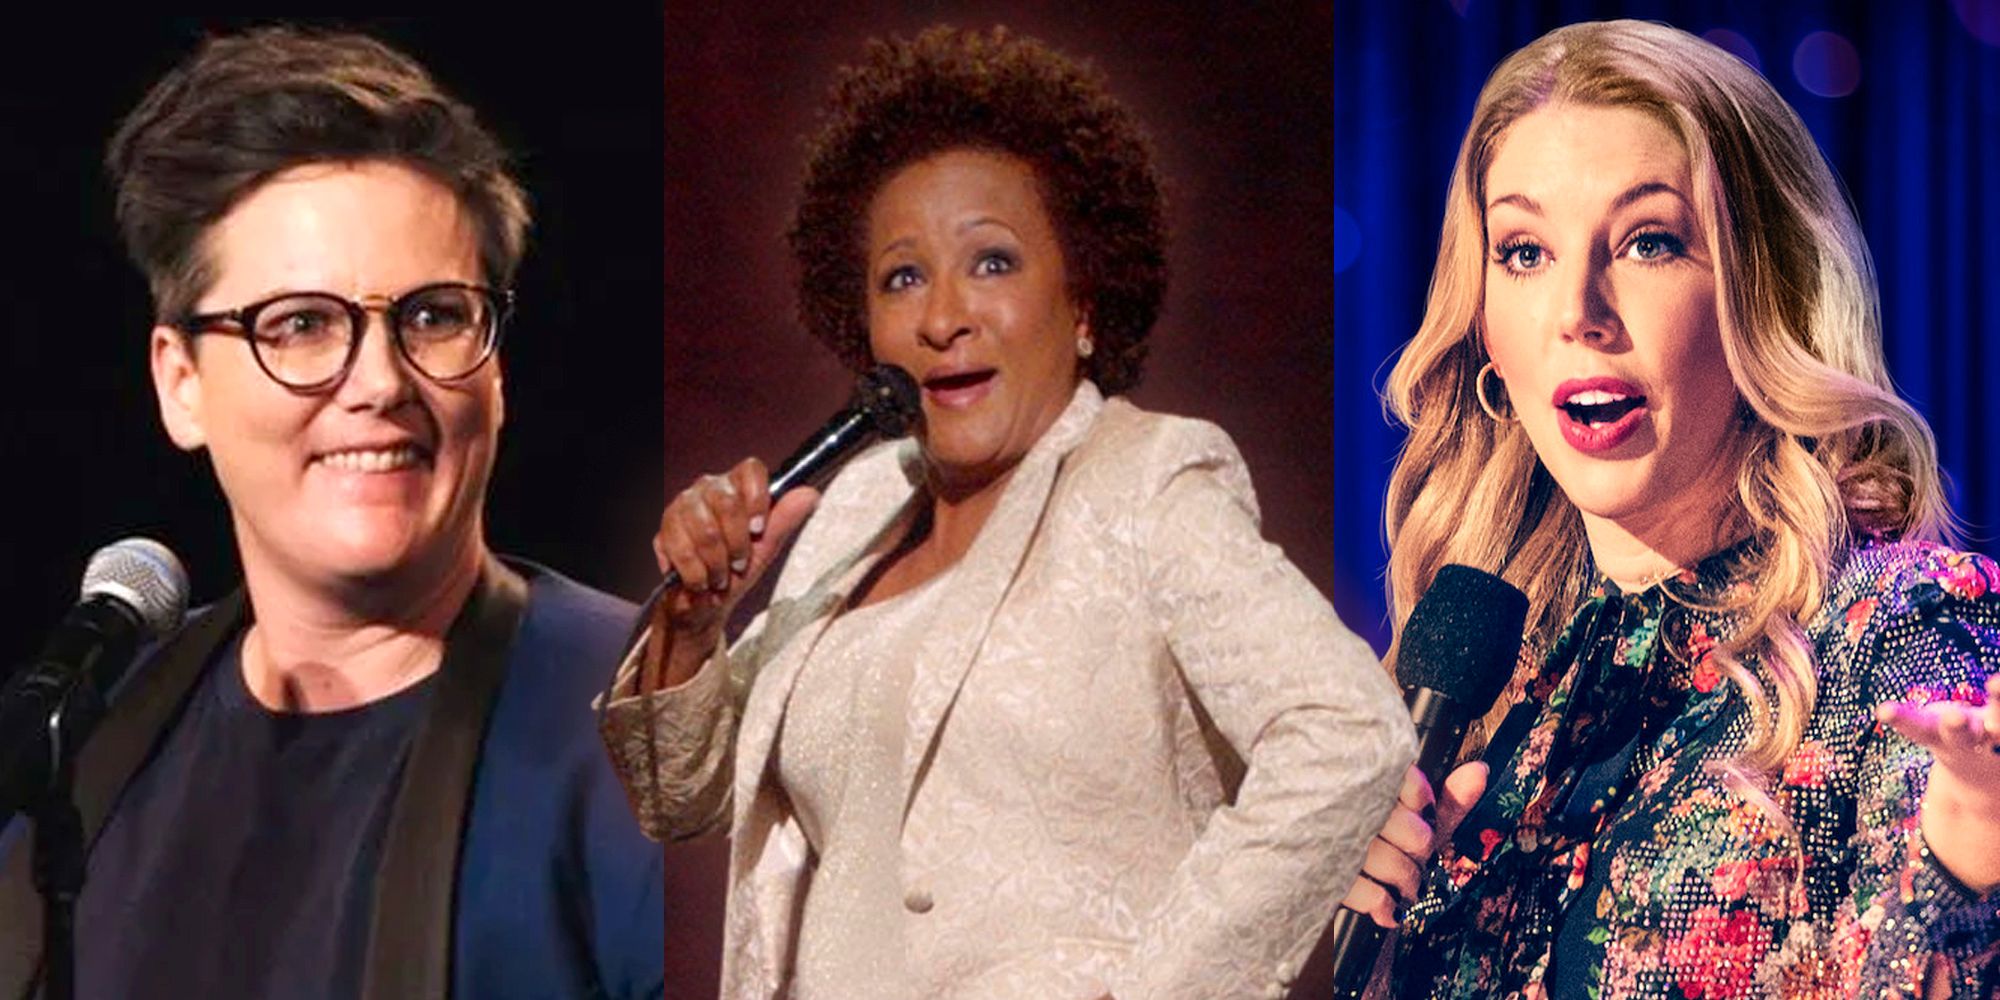 Las 12 comediantes de stand-up más divertidas que puedes ver en Netflix ahora mismo